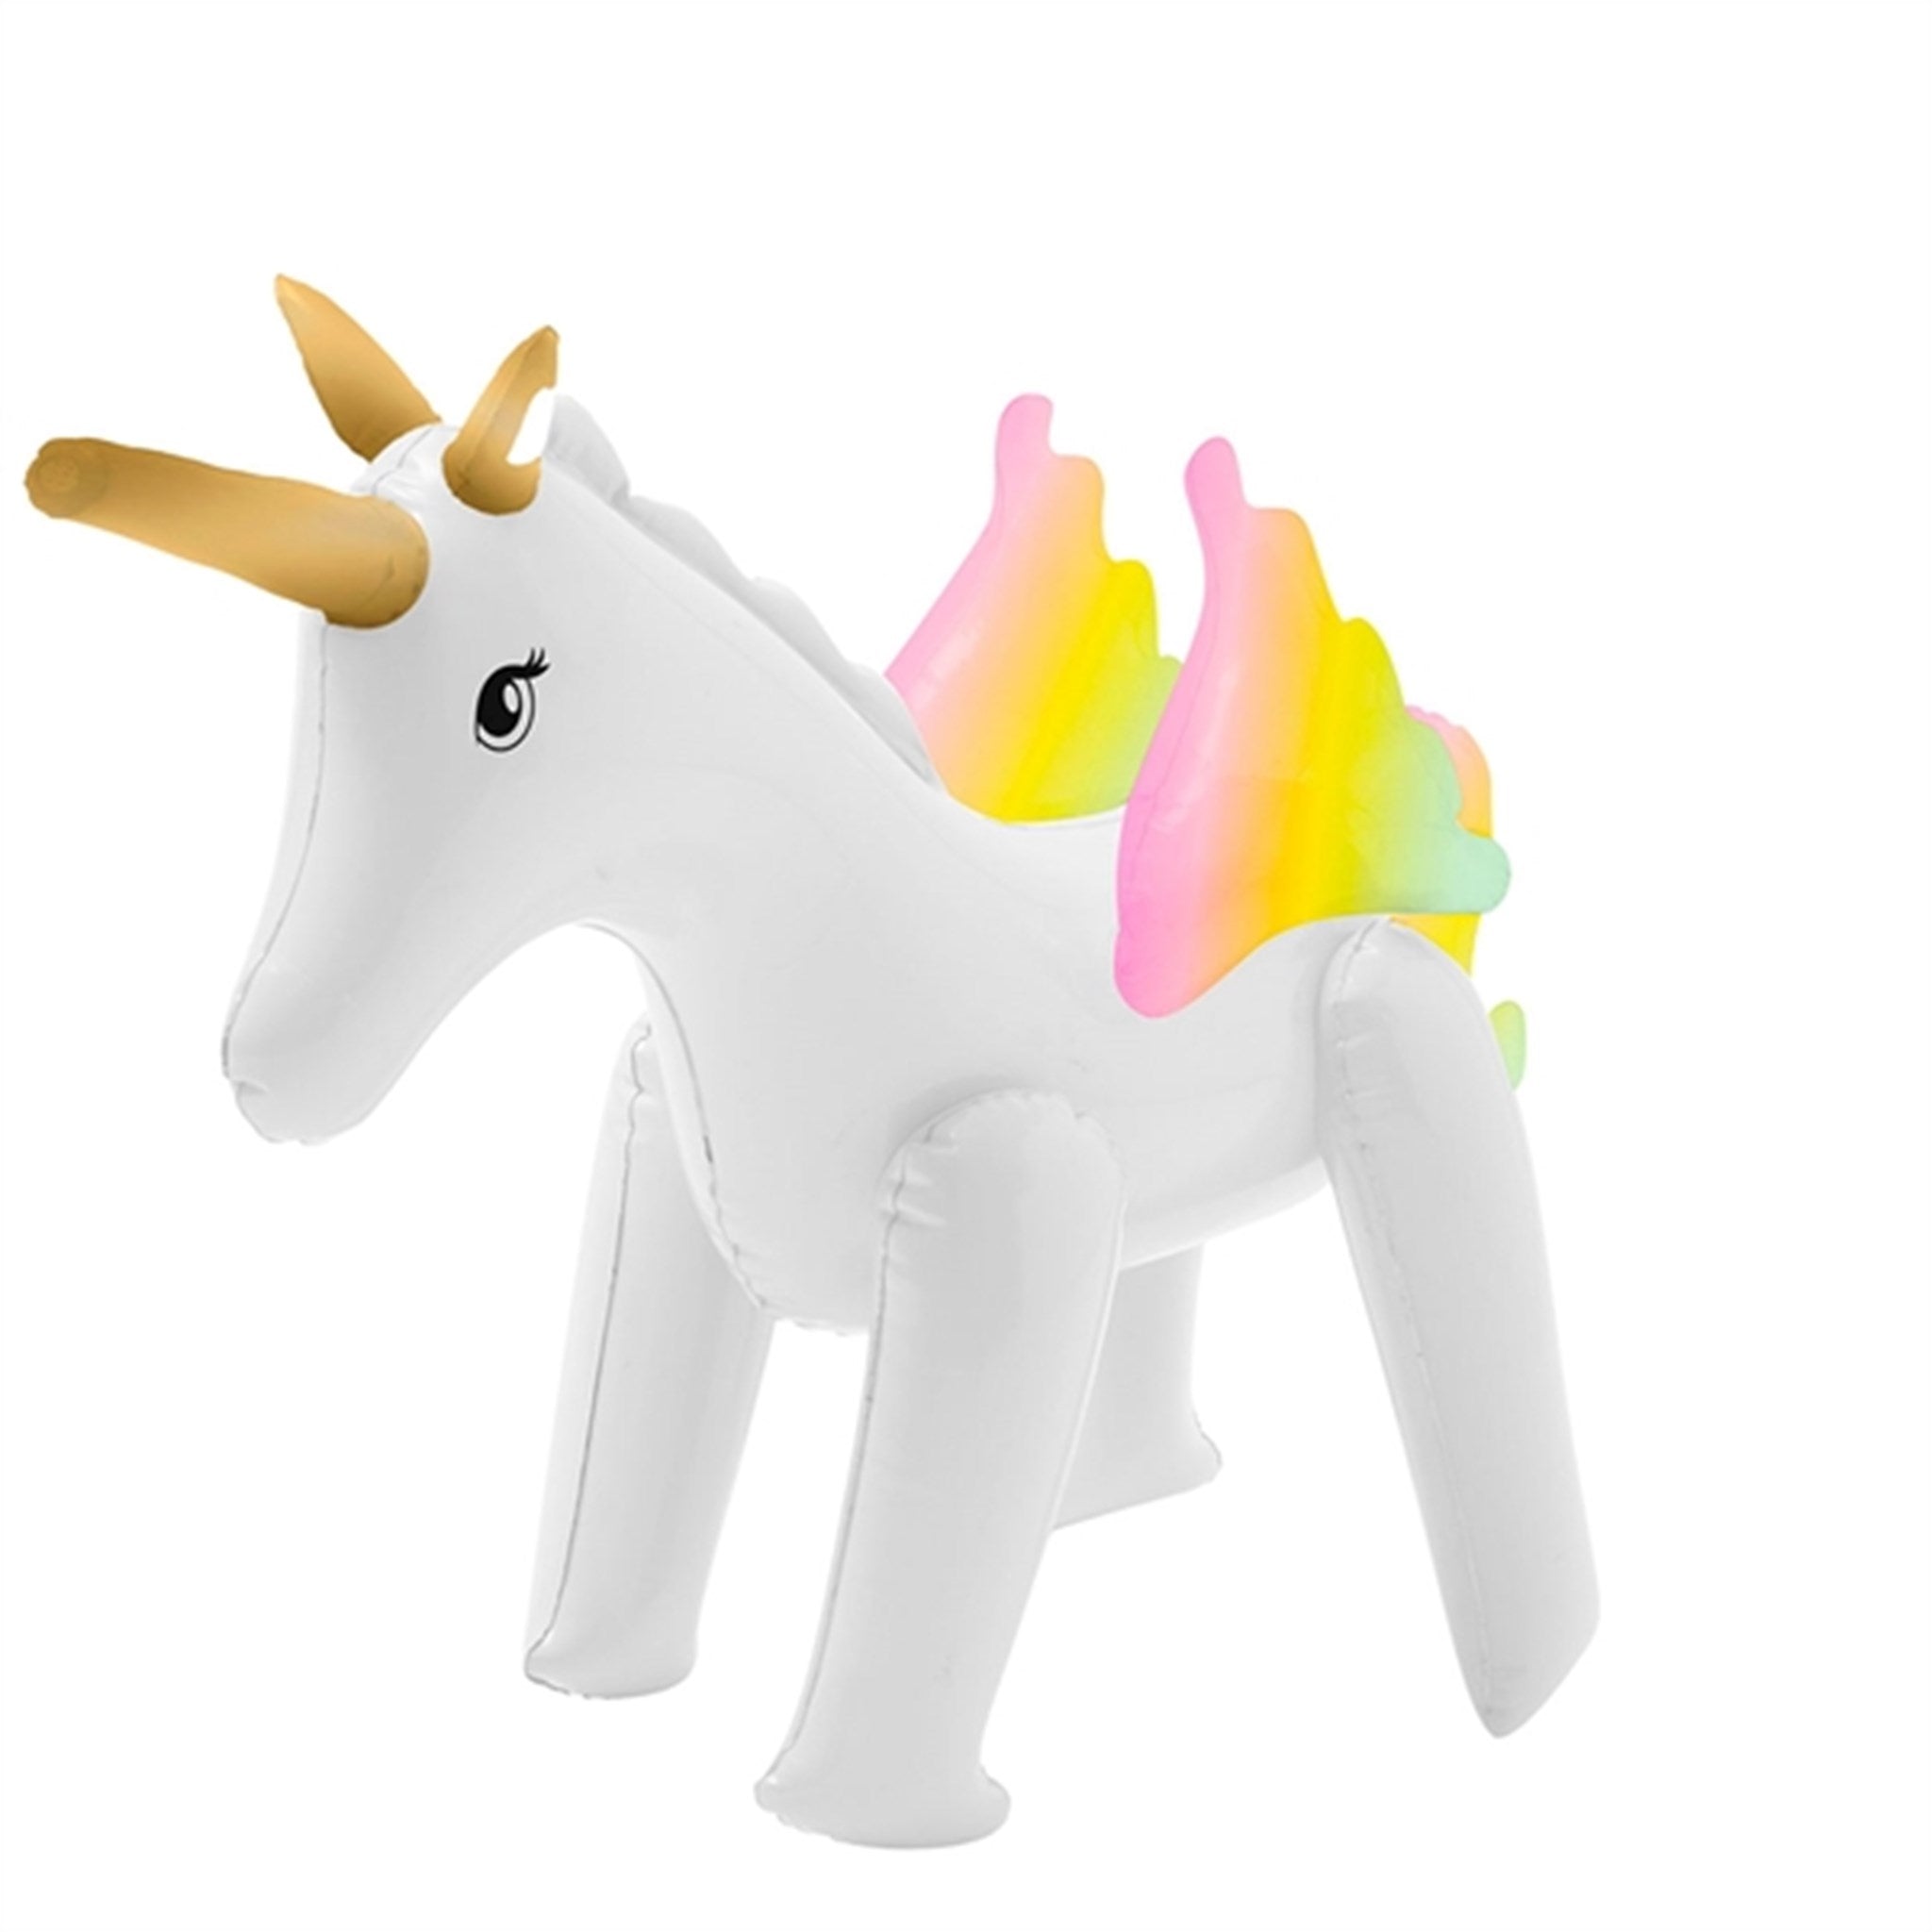 SunnyLife Inflatable Sprinkler Unicorn